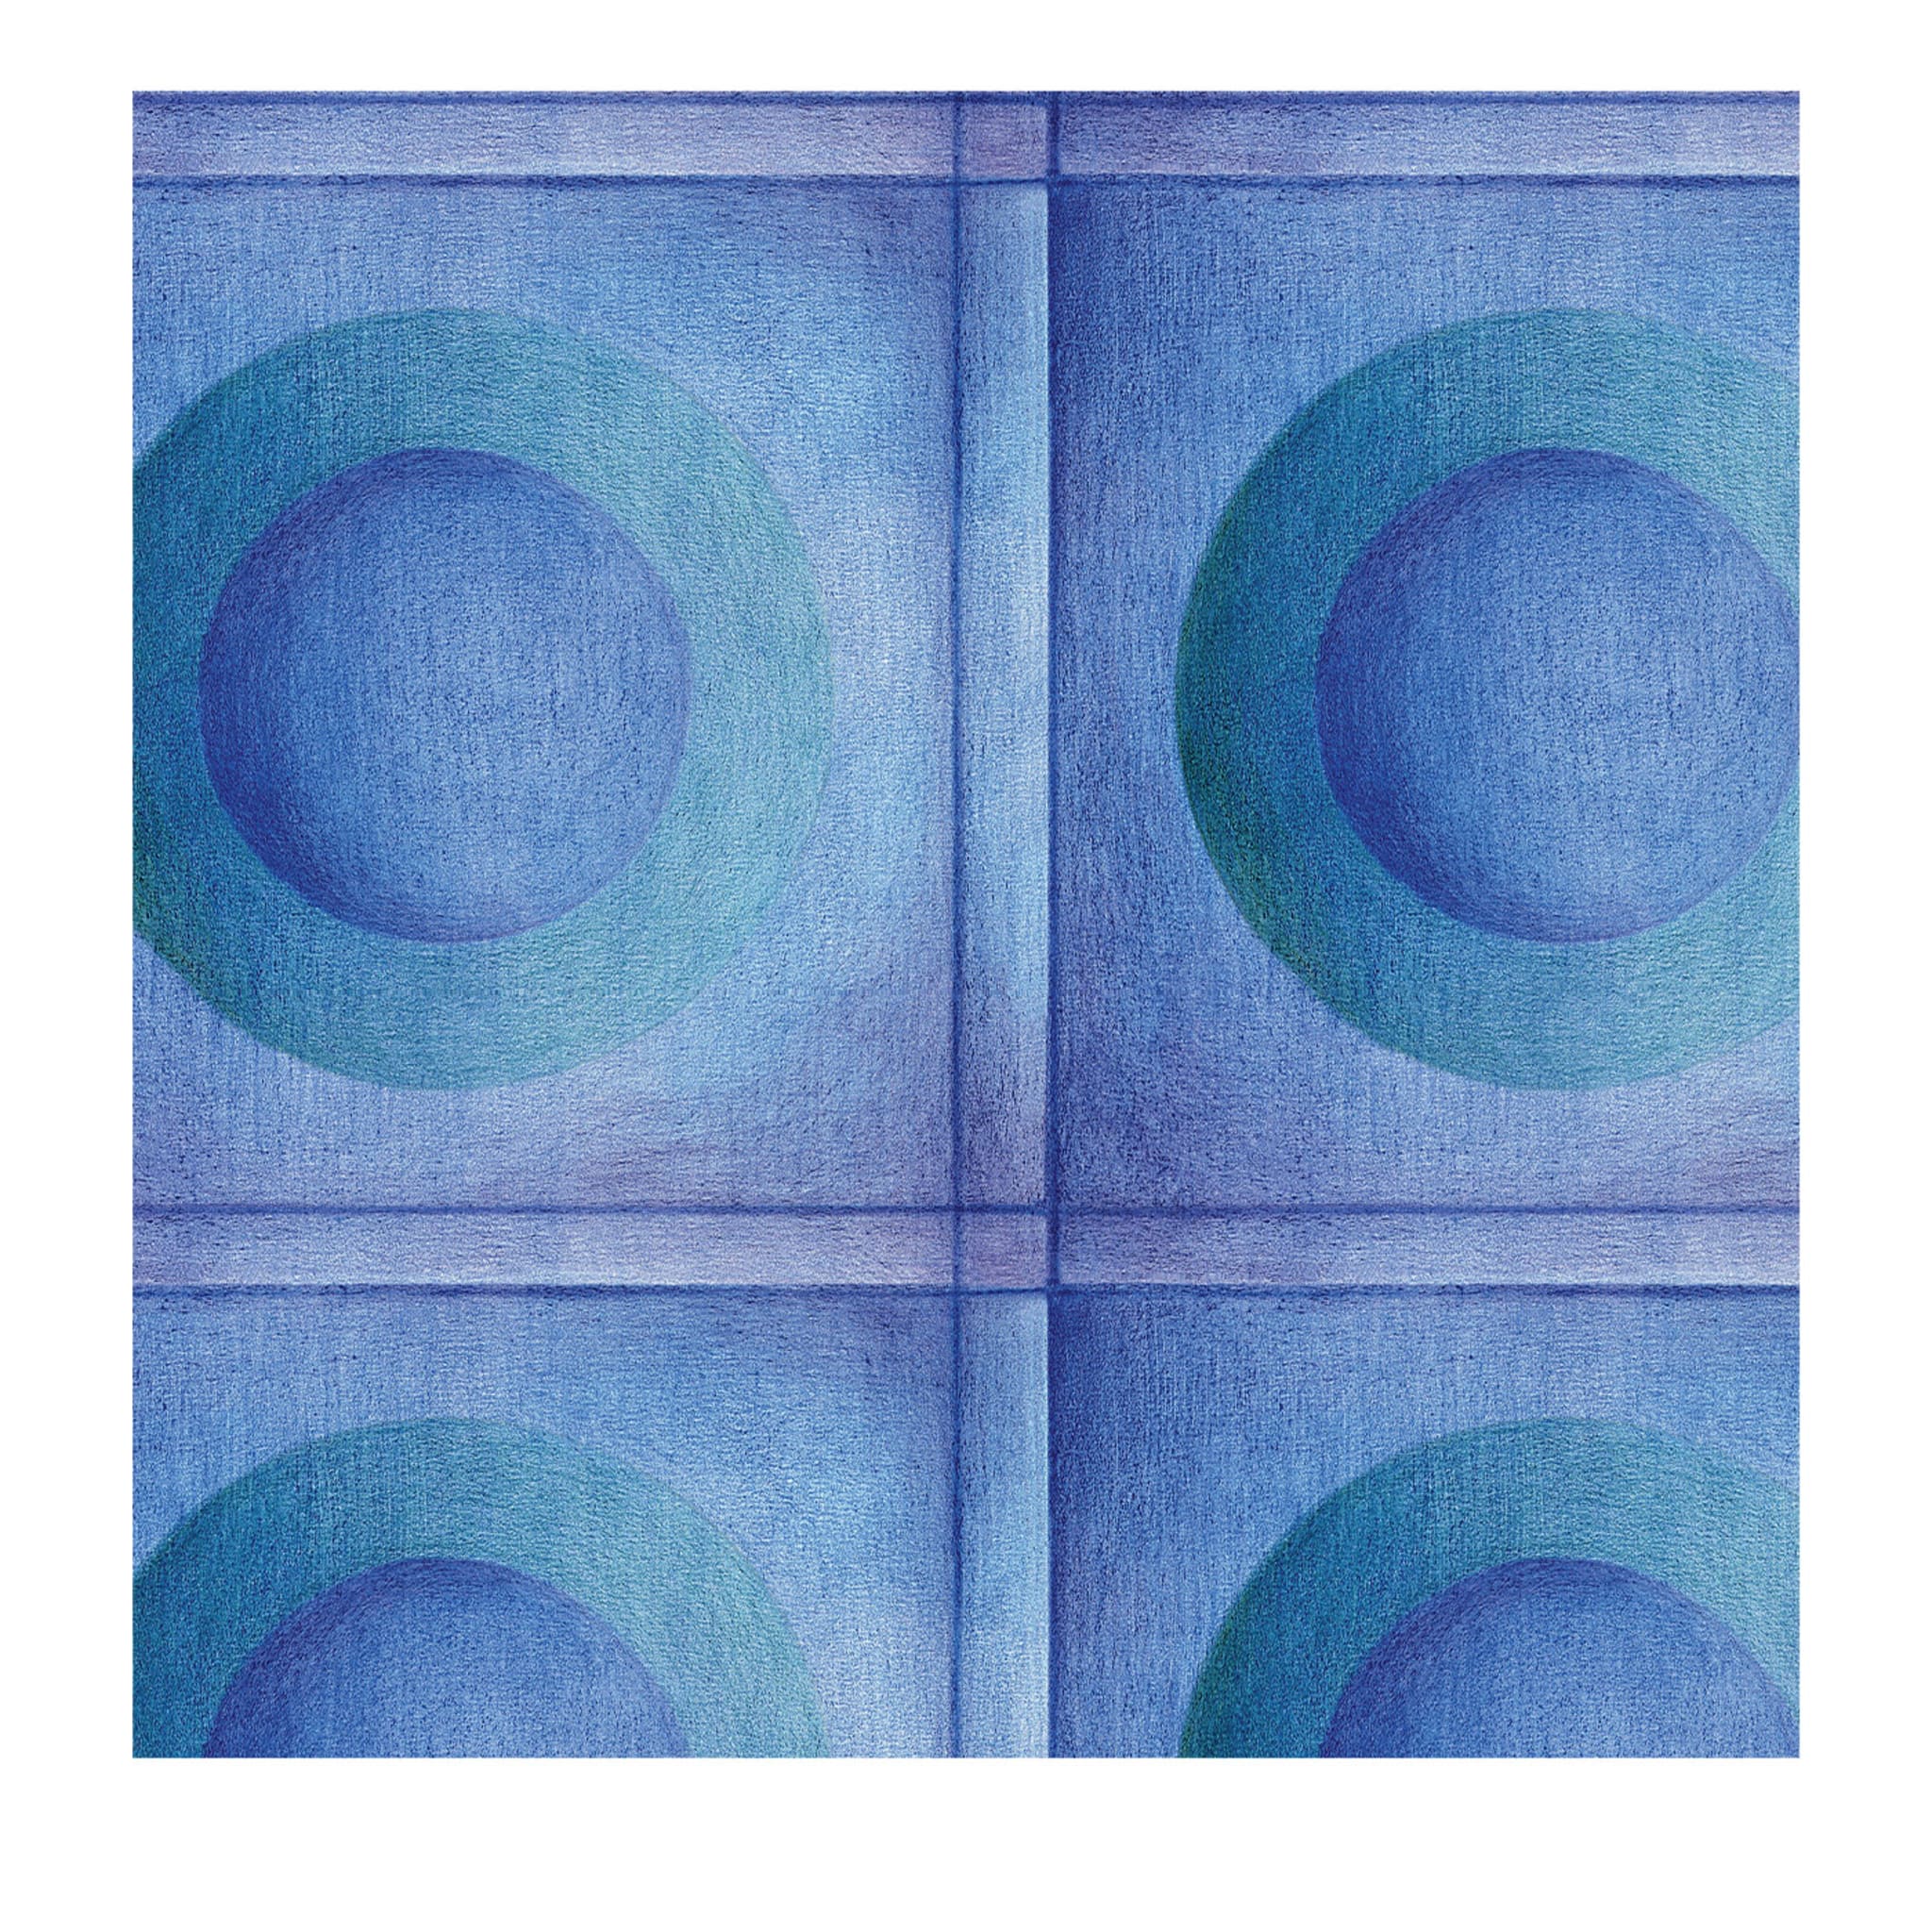 Meditation Dot Blue & Green Wallpaper - Main view